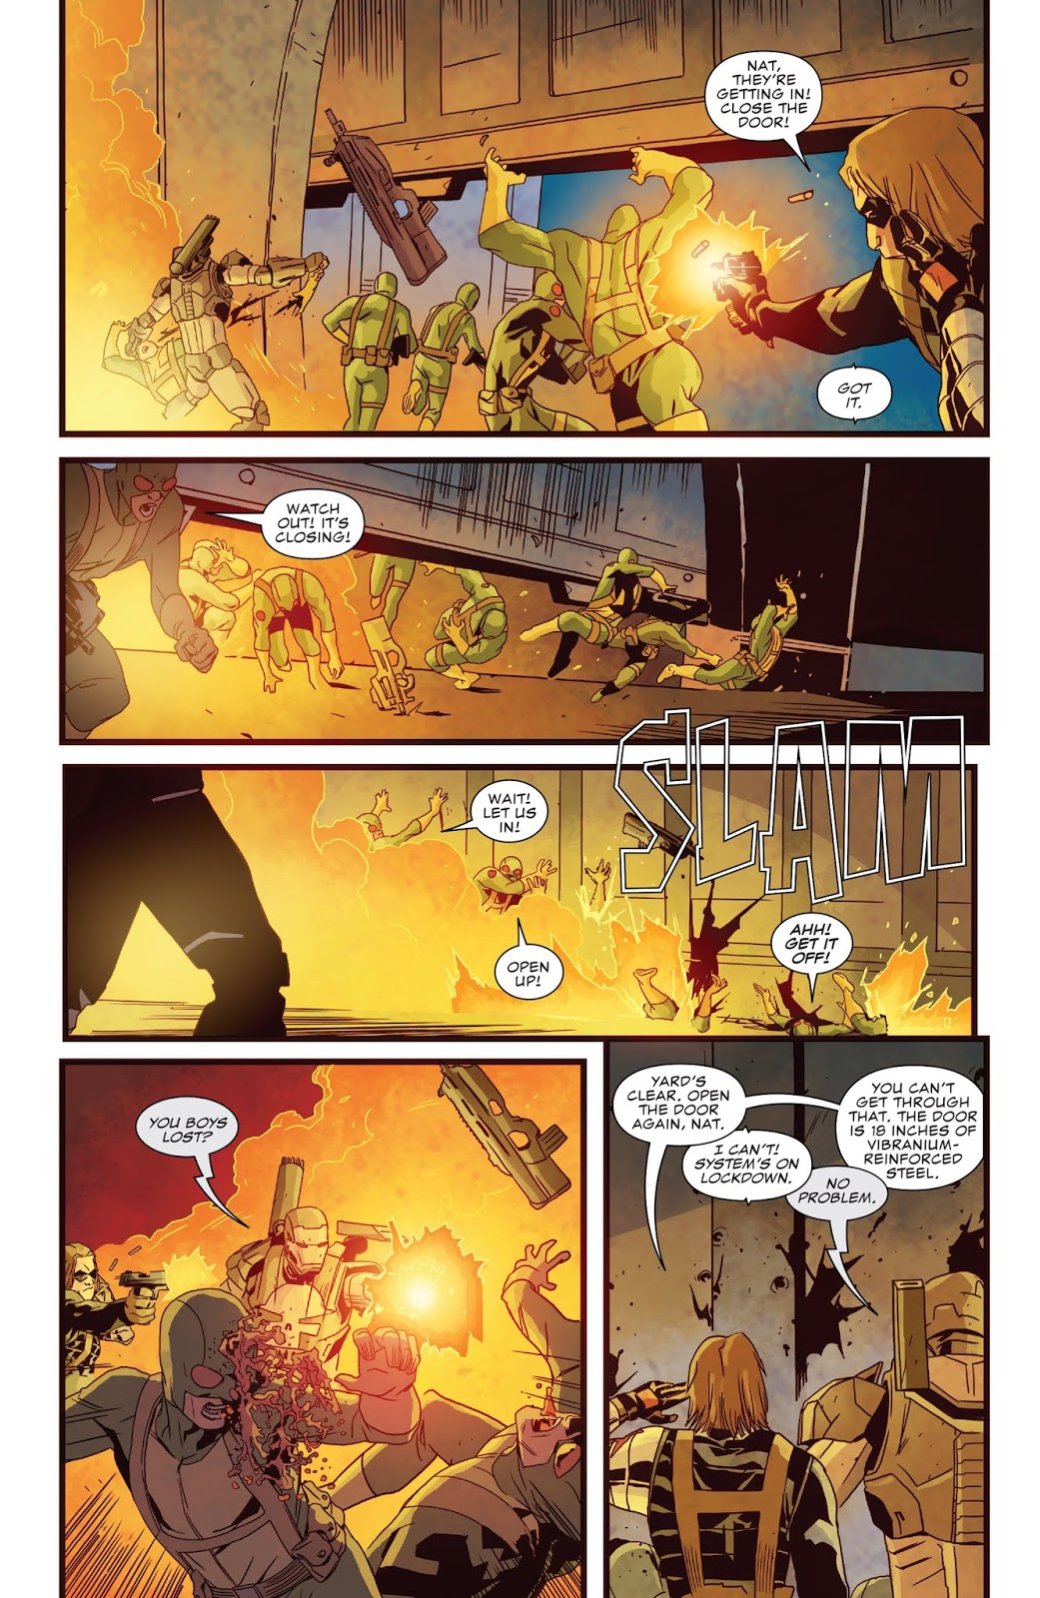 Галерея Каратель в броне Железного человека против вселенной Marvel: кто кого? - 3 фото